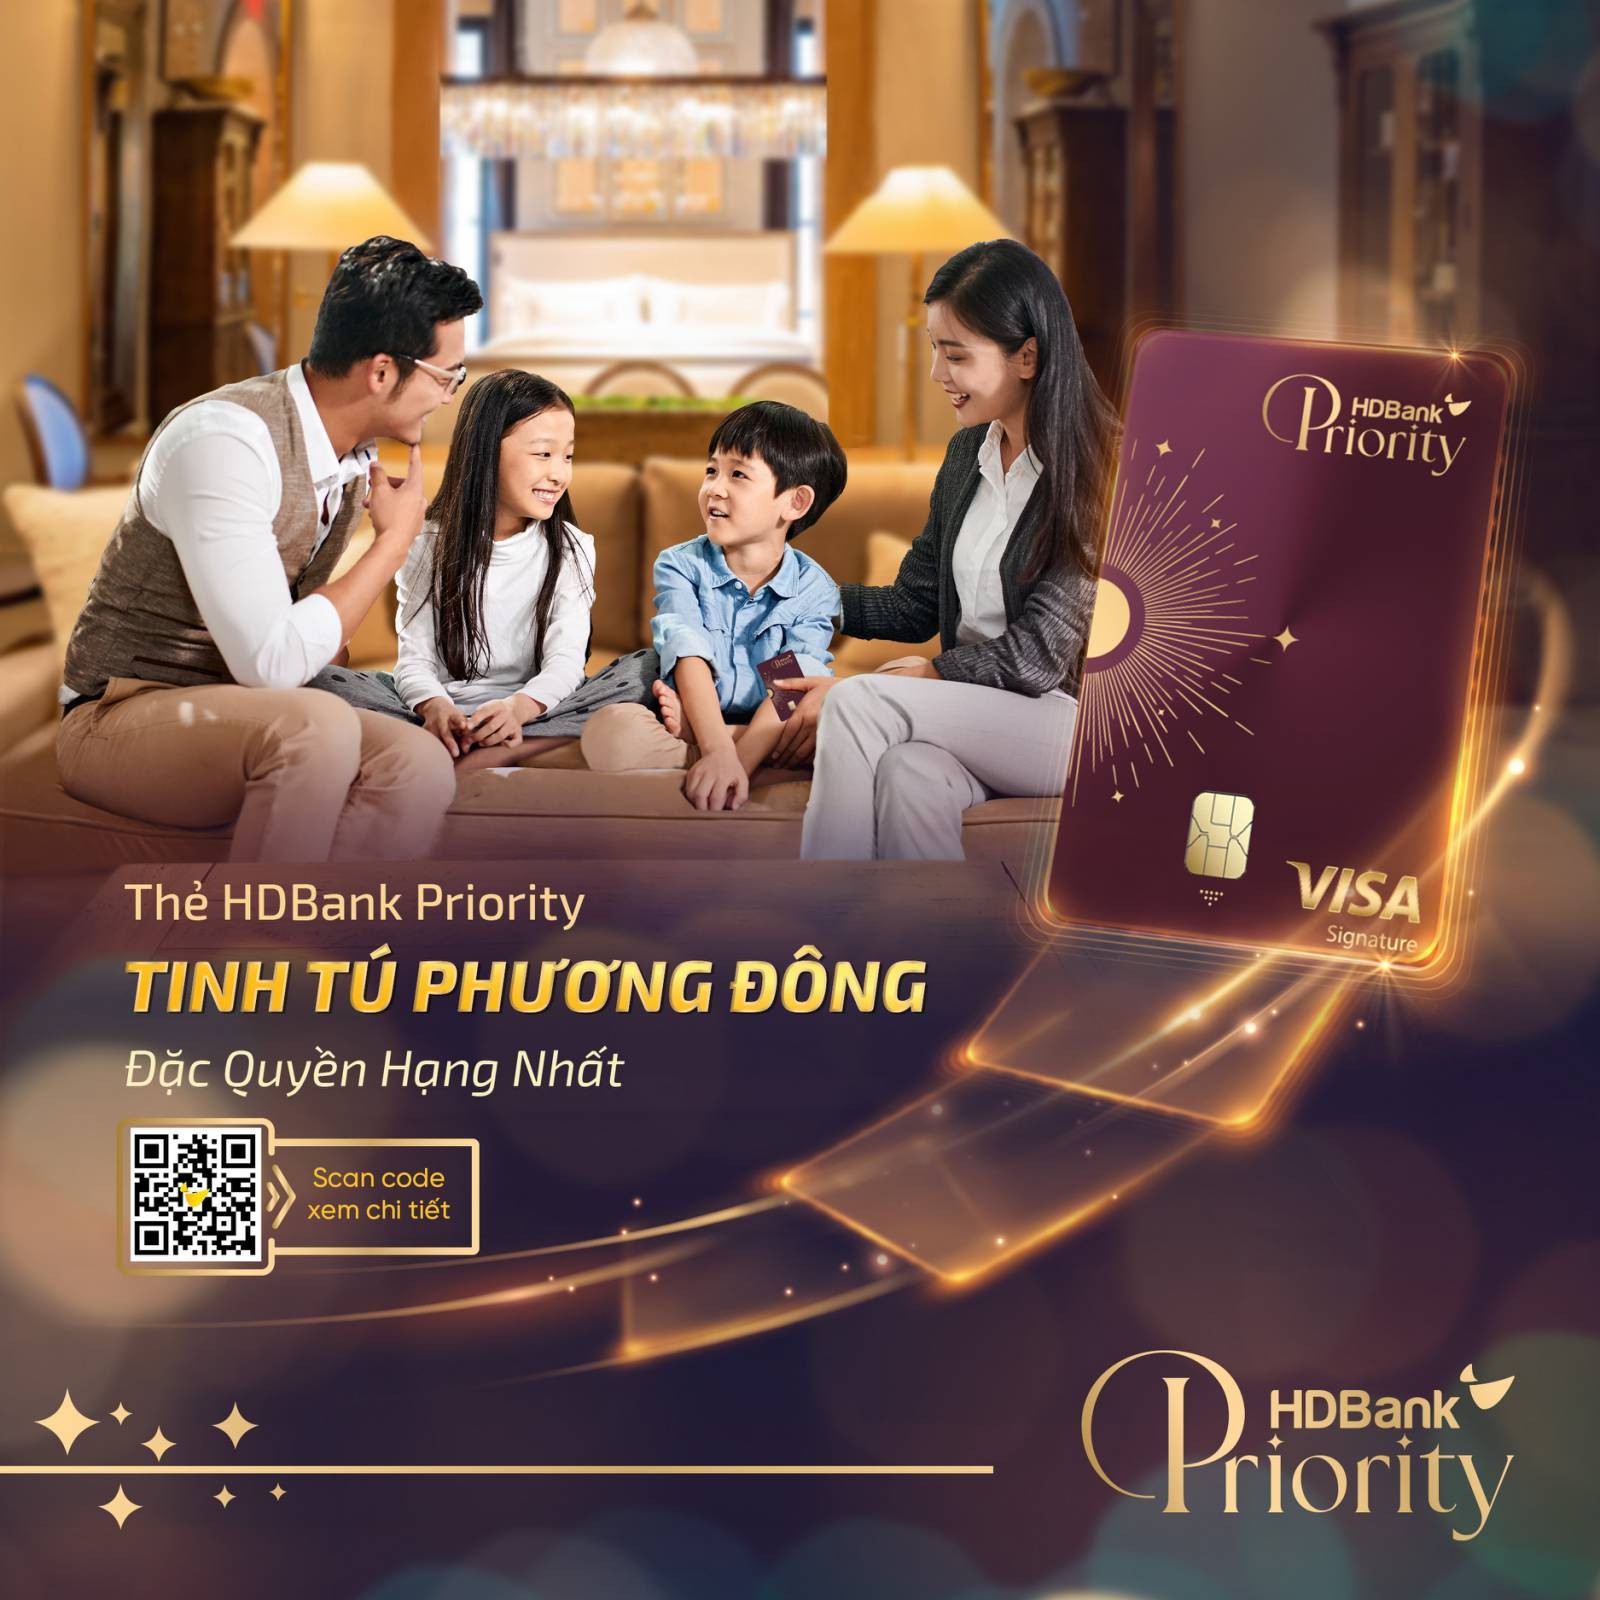 hinh-7-the-tin-dung-hdbank-priority-tinh-tu-phuong-dong-1688444614.jpg